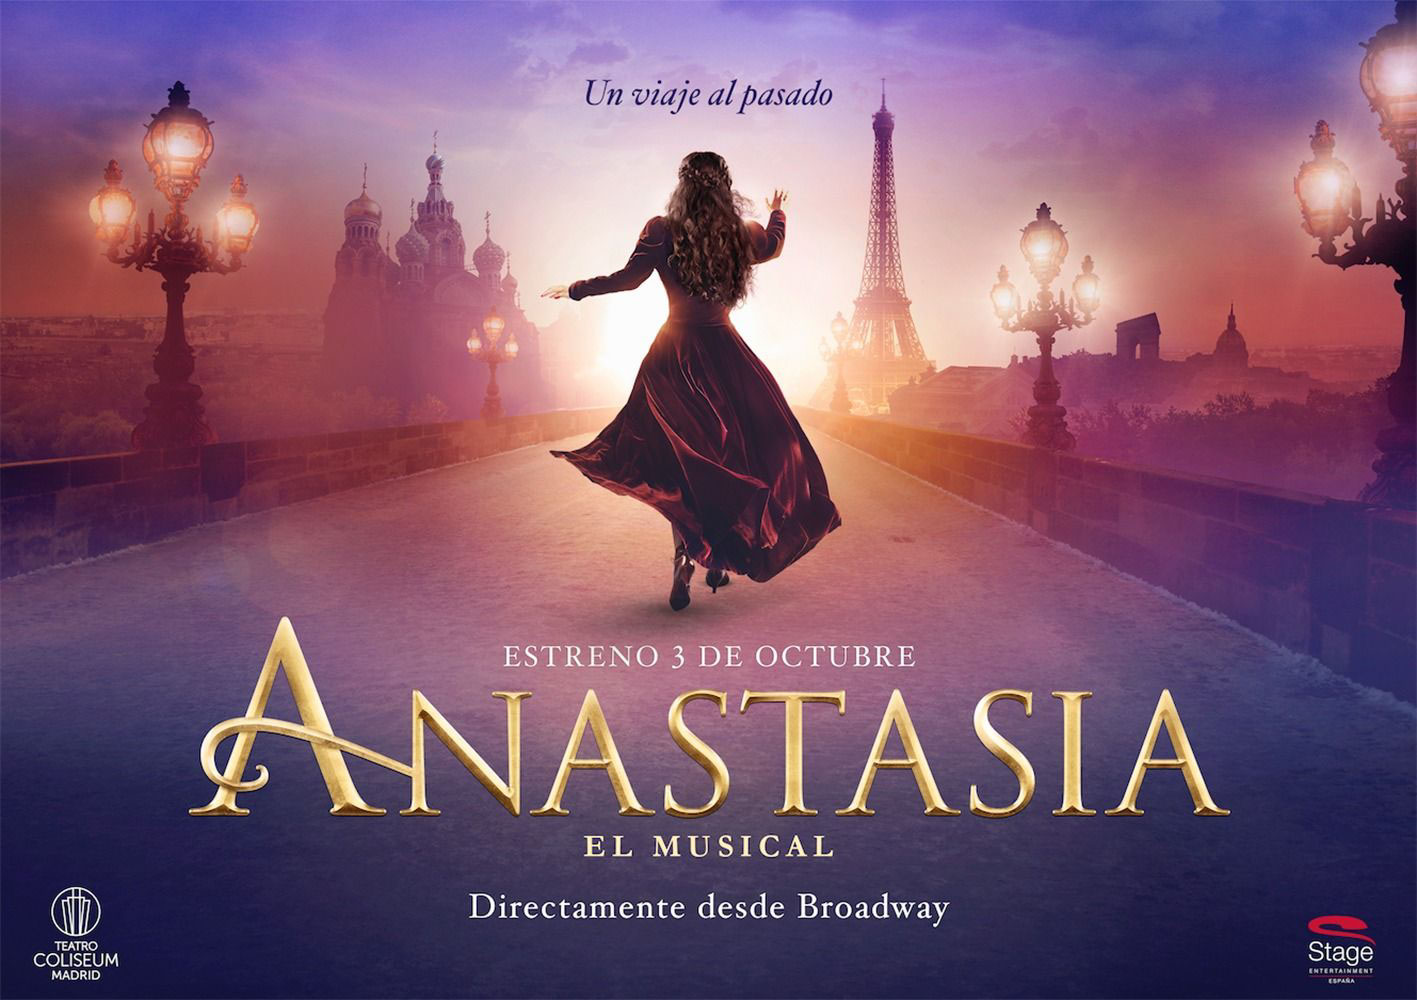 Cartel del musical de Anastasia (Disney), diseñado y elaborado por Enri Mür Studio y producido por Stage Entertainment.